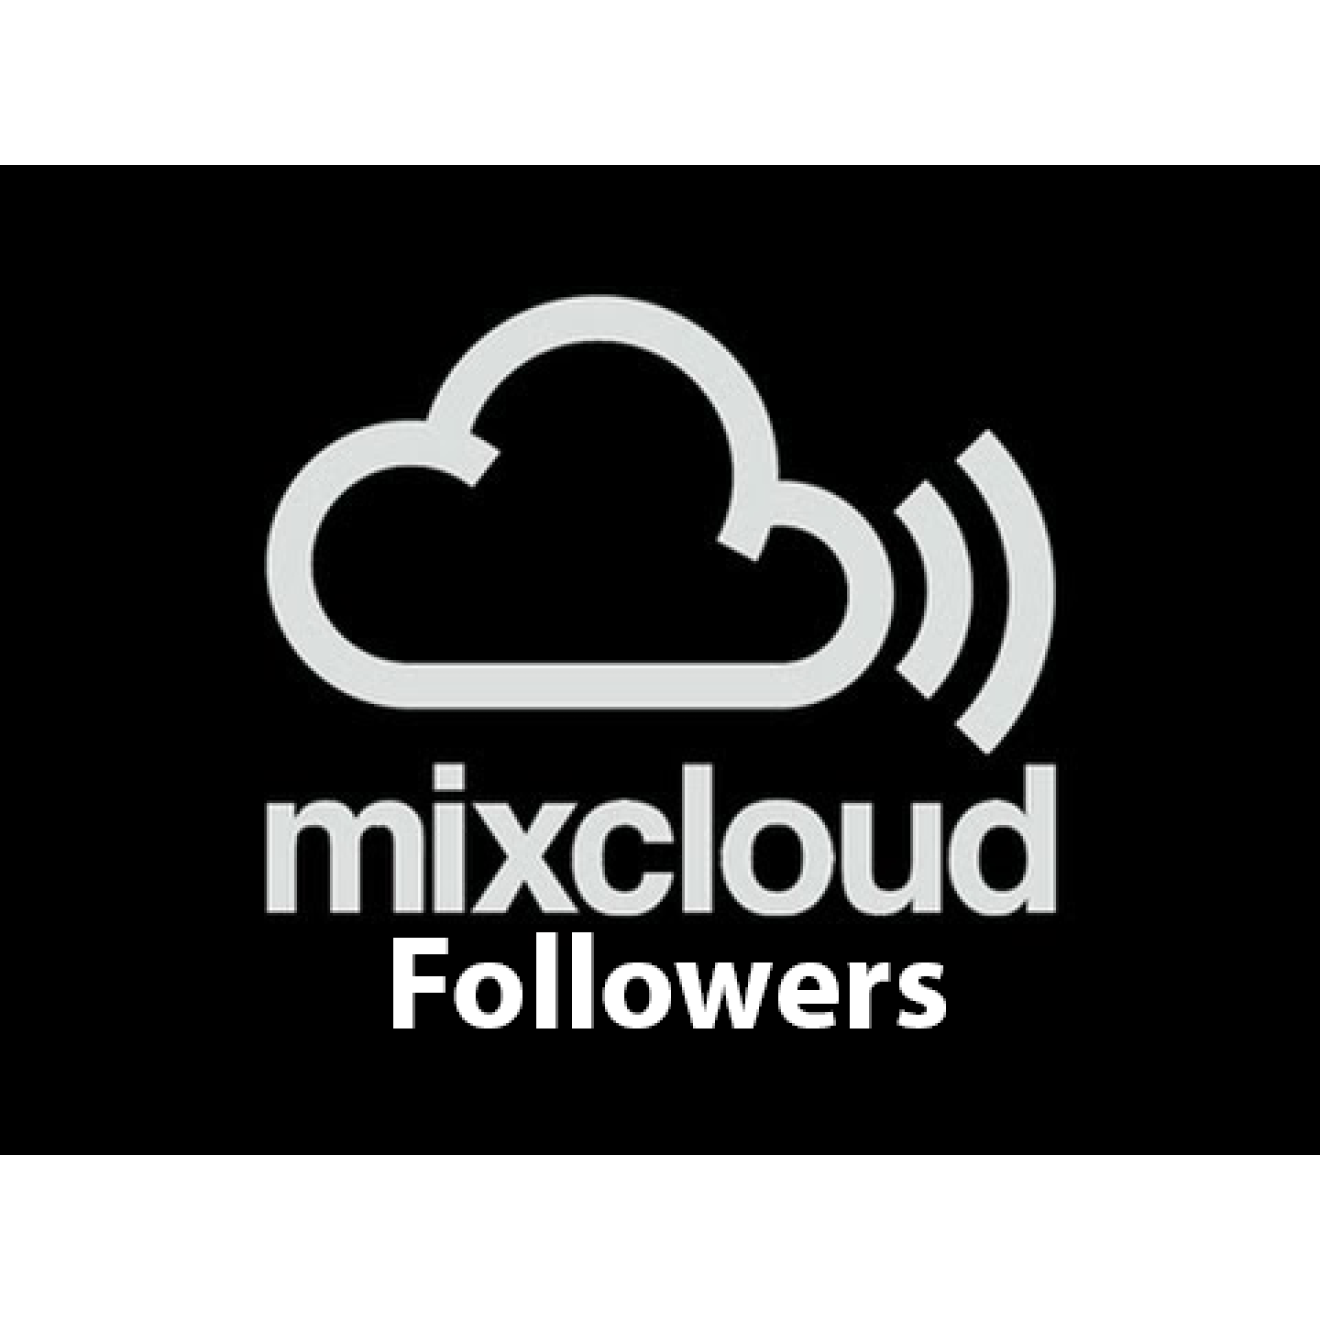 25000 Mixcloud Followers / Abonnenten für Dich